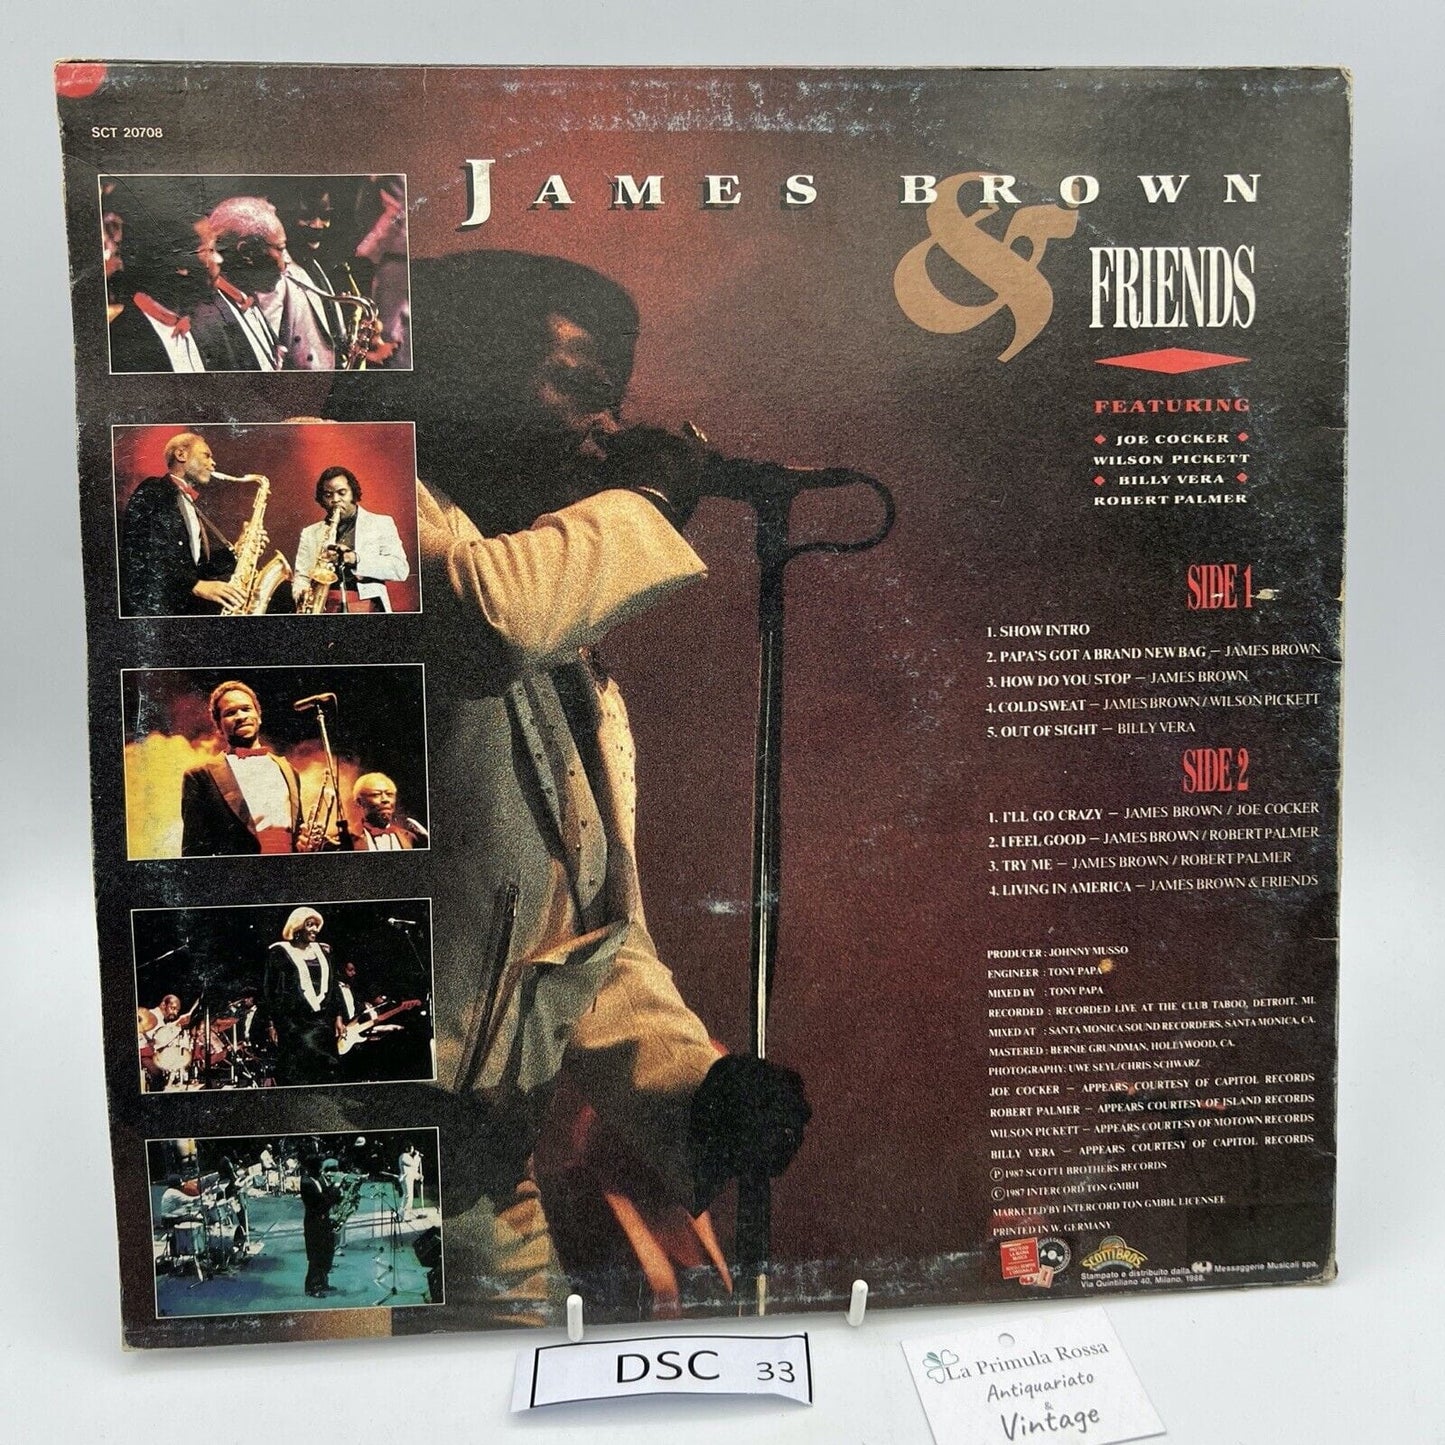 Disco in vinile 33 giri lp di James Brown Soul Session VINTAGE da collezione Categoria  Dischi in Vinile